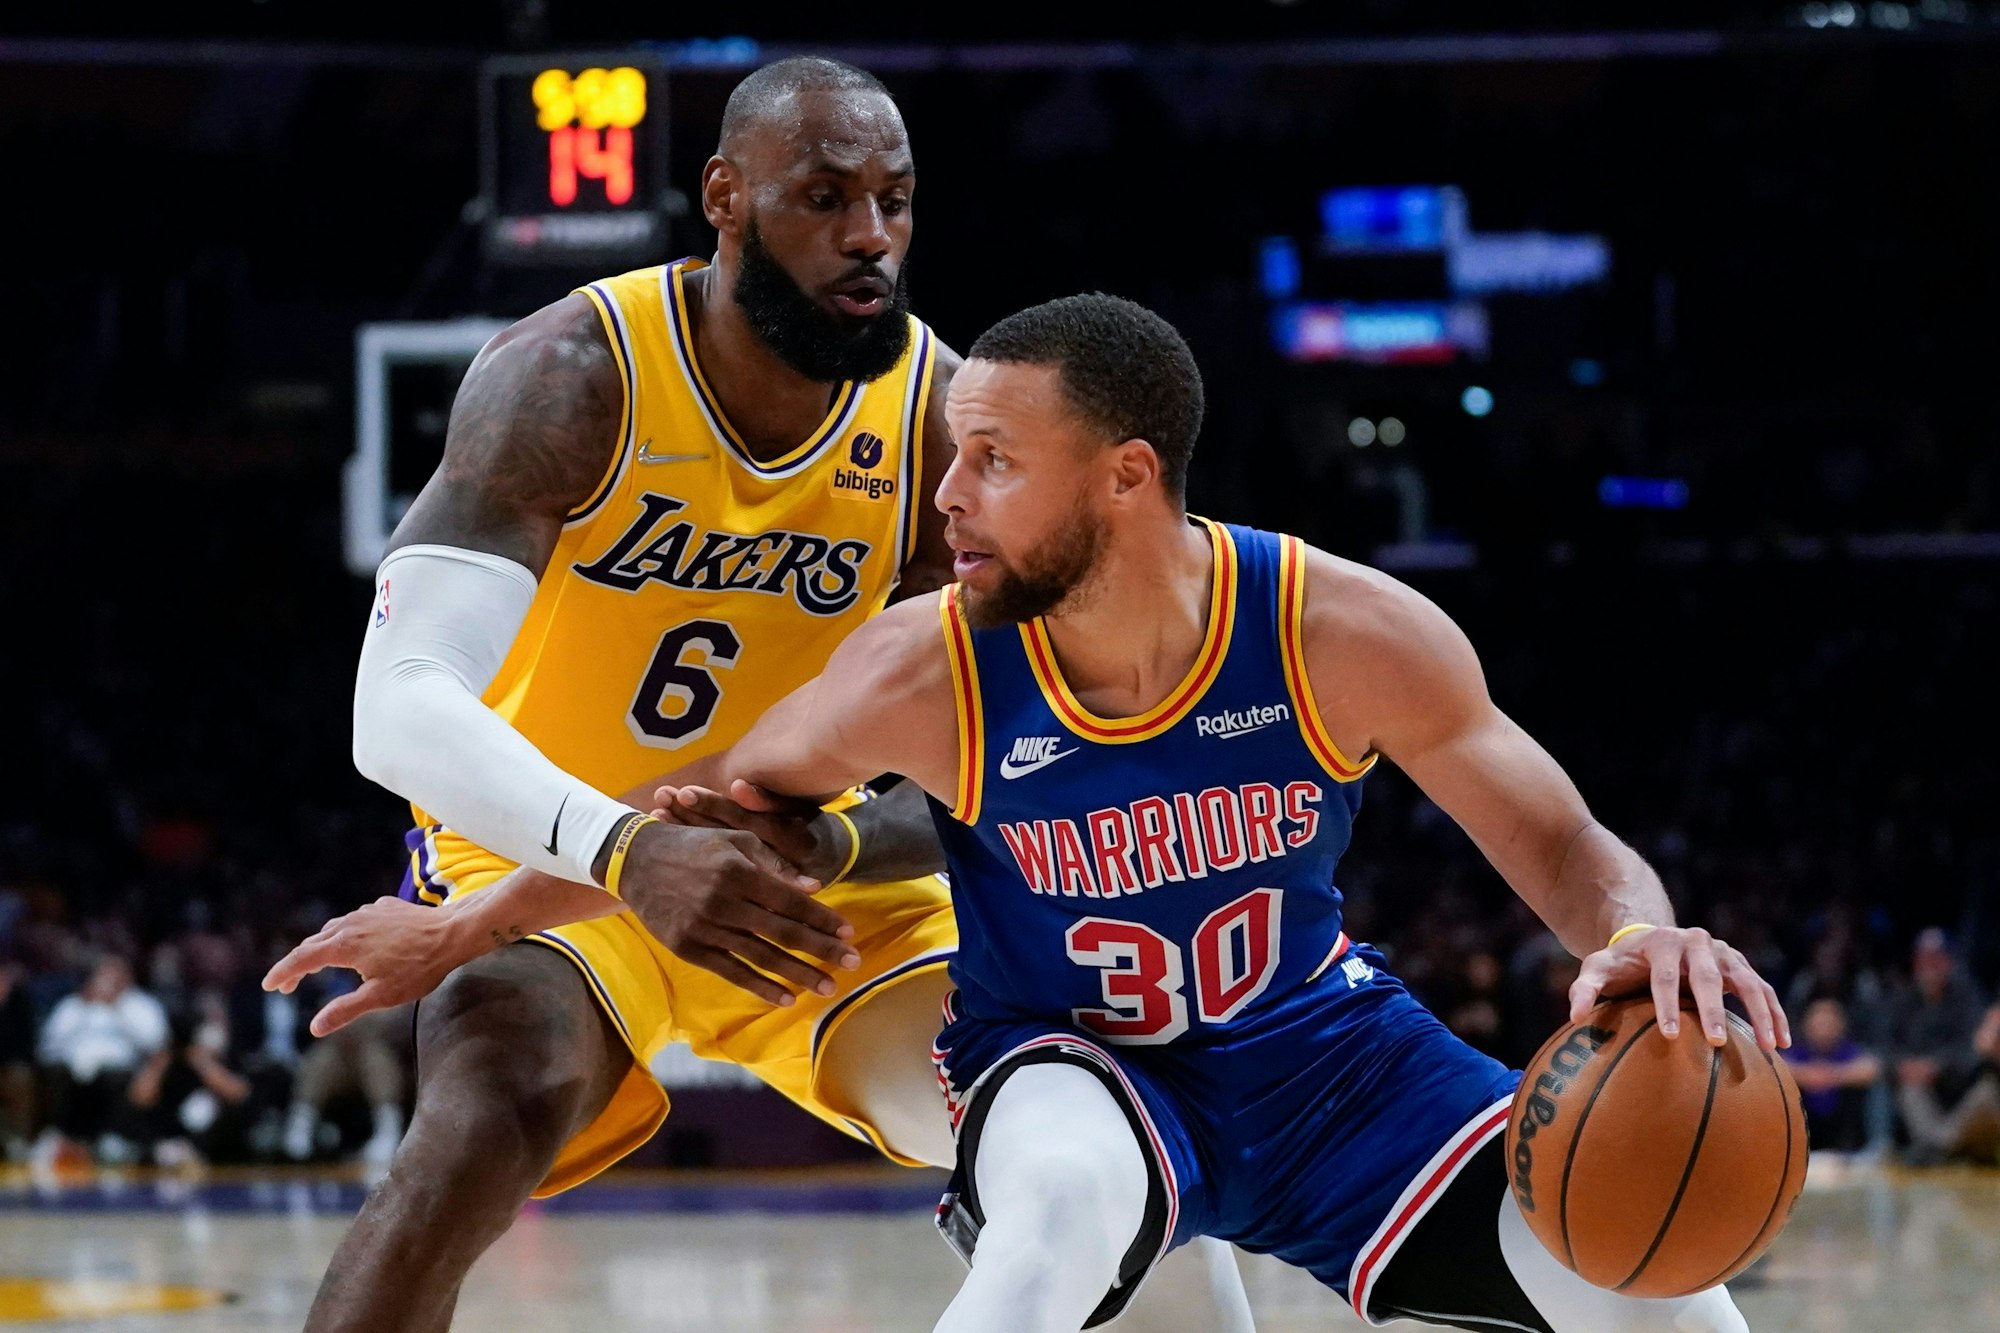 LeBron James von den Los Angeles Lakers verteidigt gegen Stephen Curry im NBA-Spiel gegen die Golden State Warriors